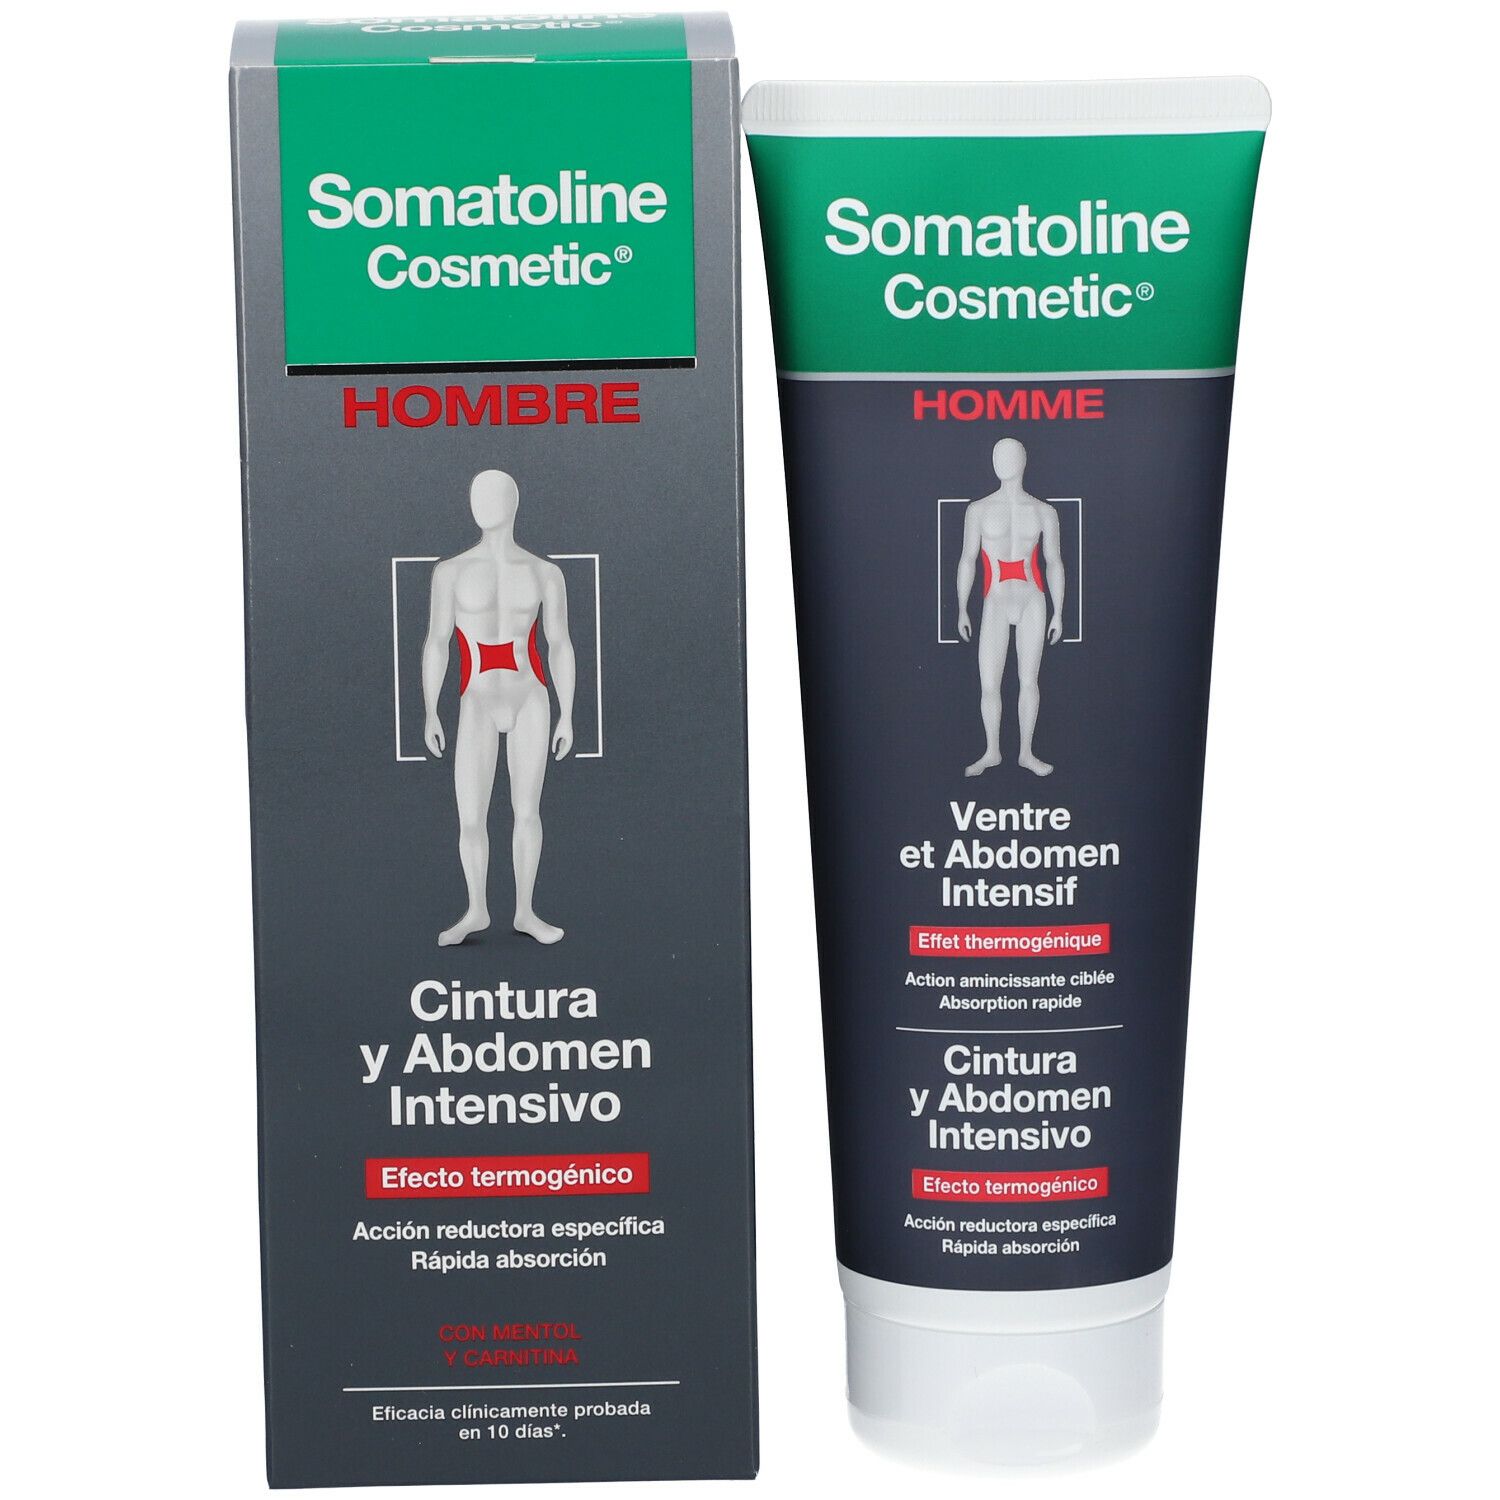 Somatoline Cosmetic® Bauch und Abdomen 7 Nächte